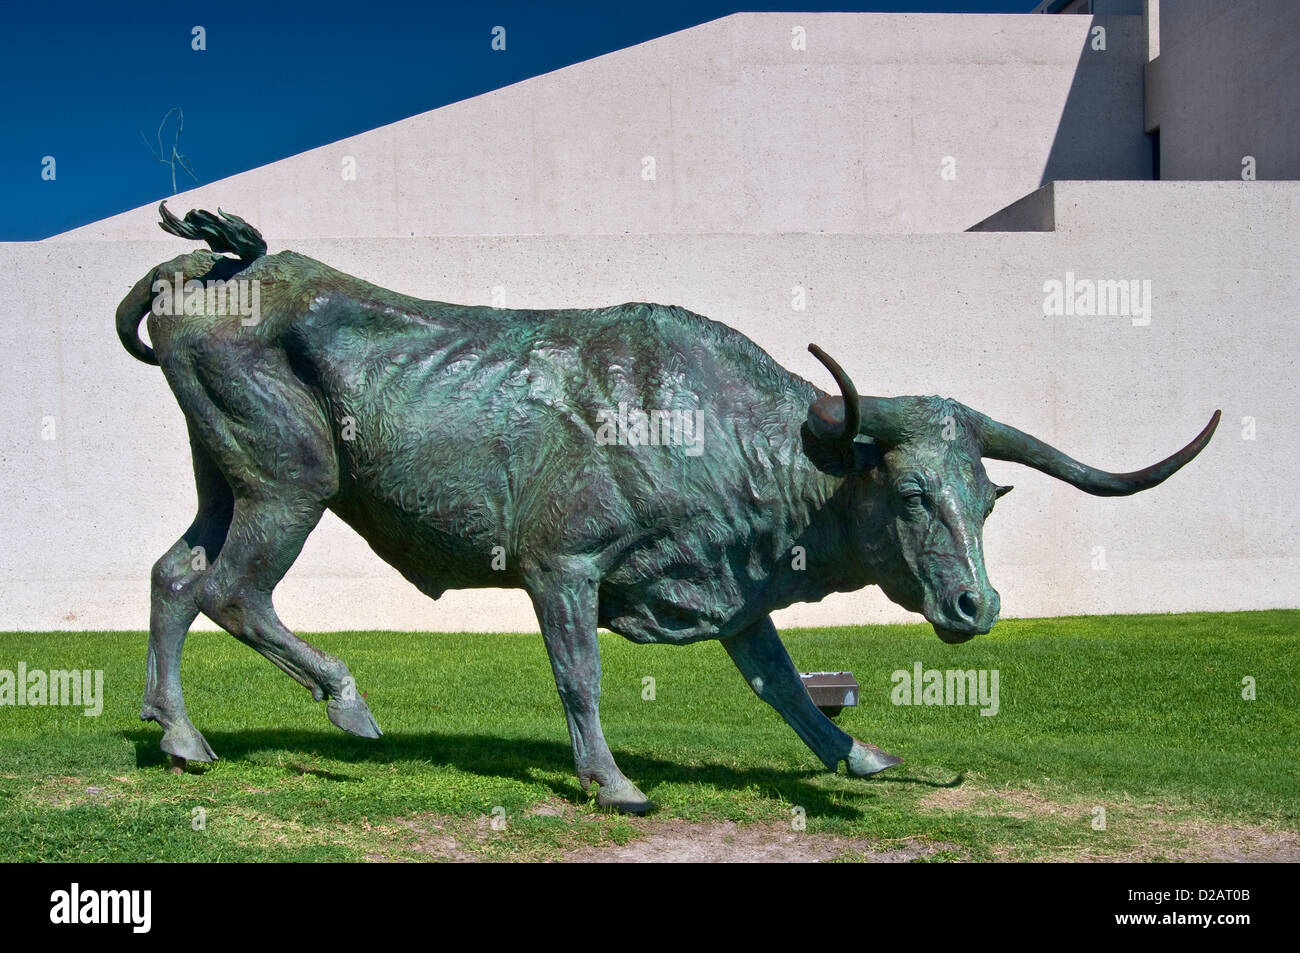 Unità trail steer, scultura in bronzo di robert estati, museo d'arte del Texas del sud, Corpus Christi, costa del golfo, texas, Stati Uniti d'America Foto Stock